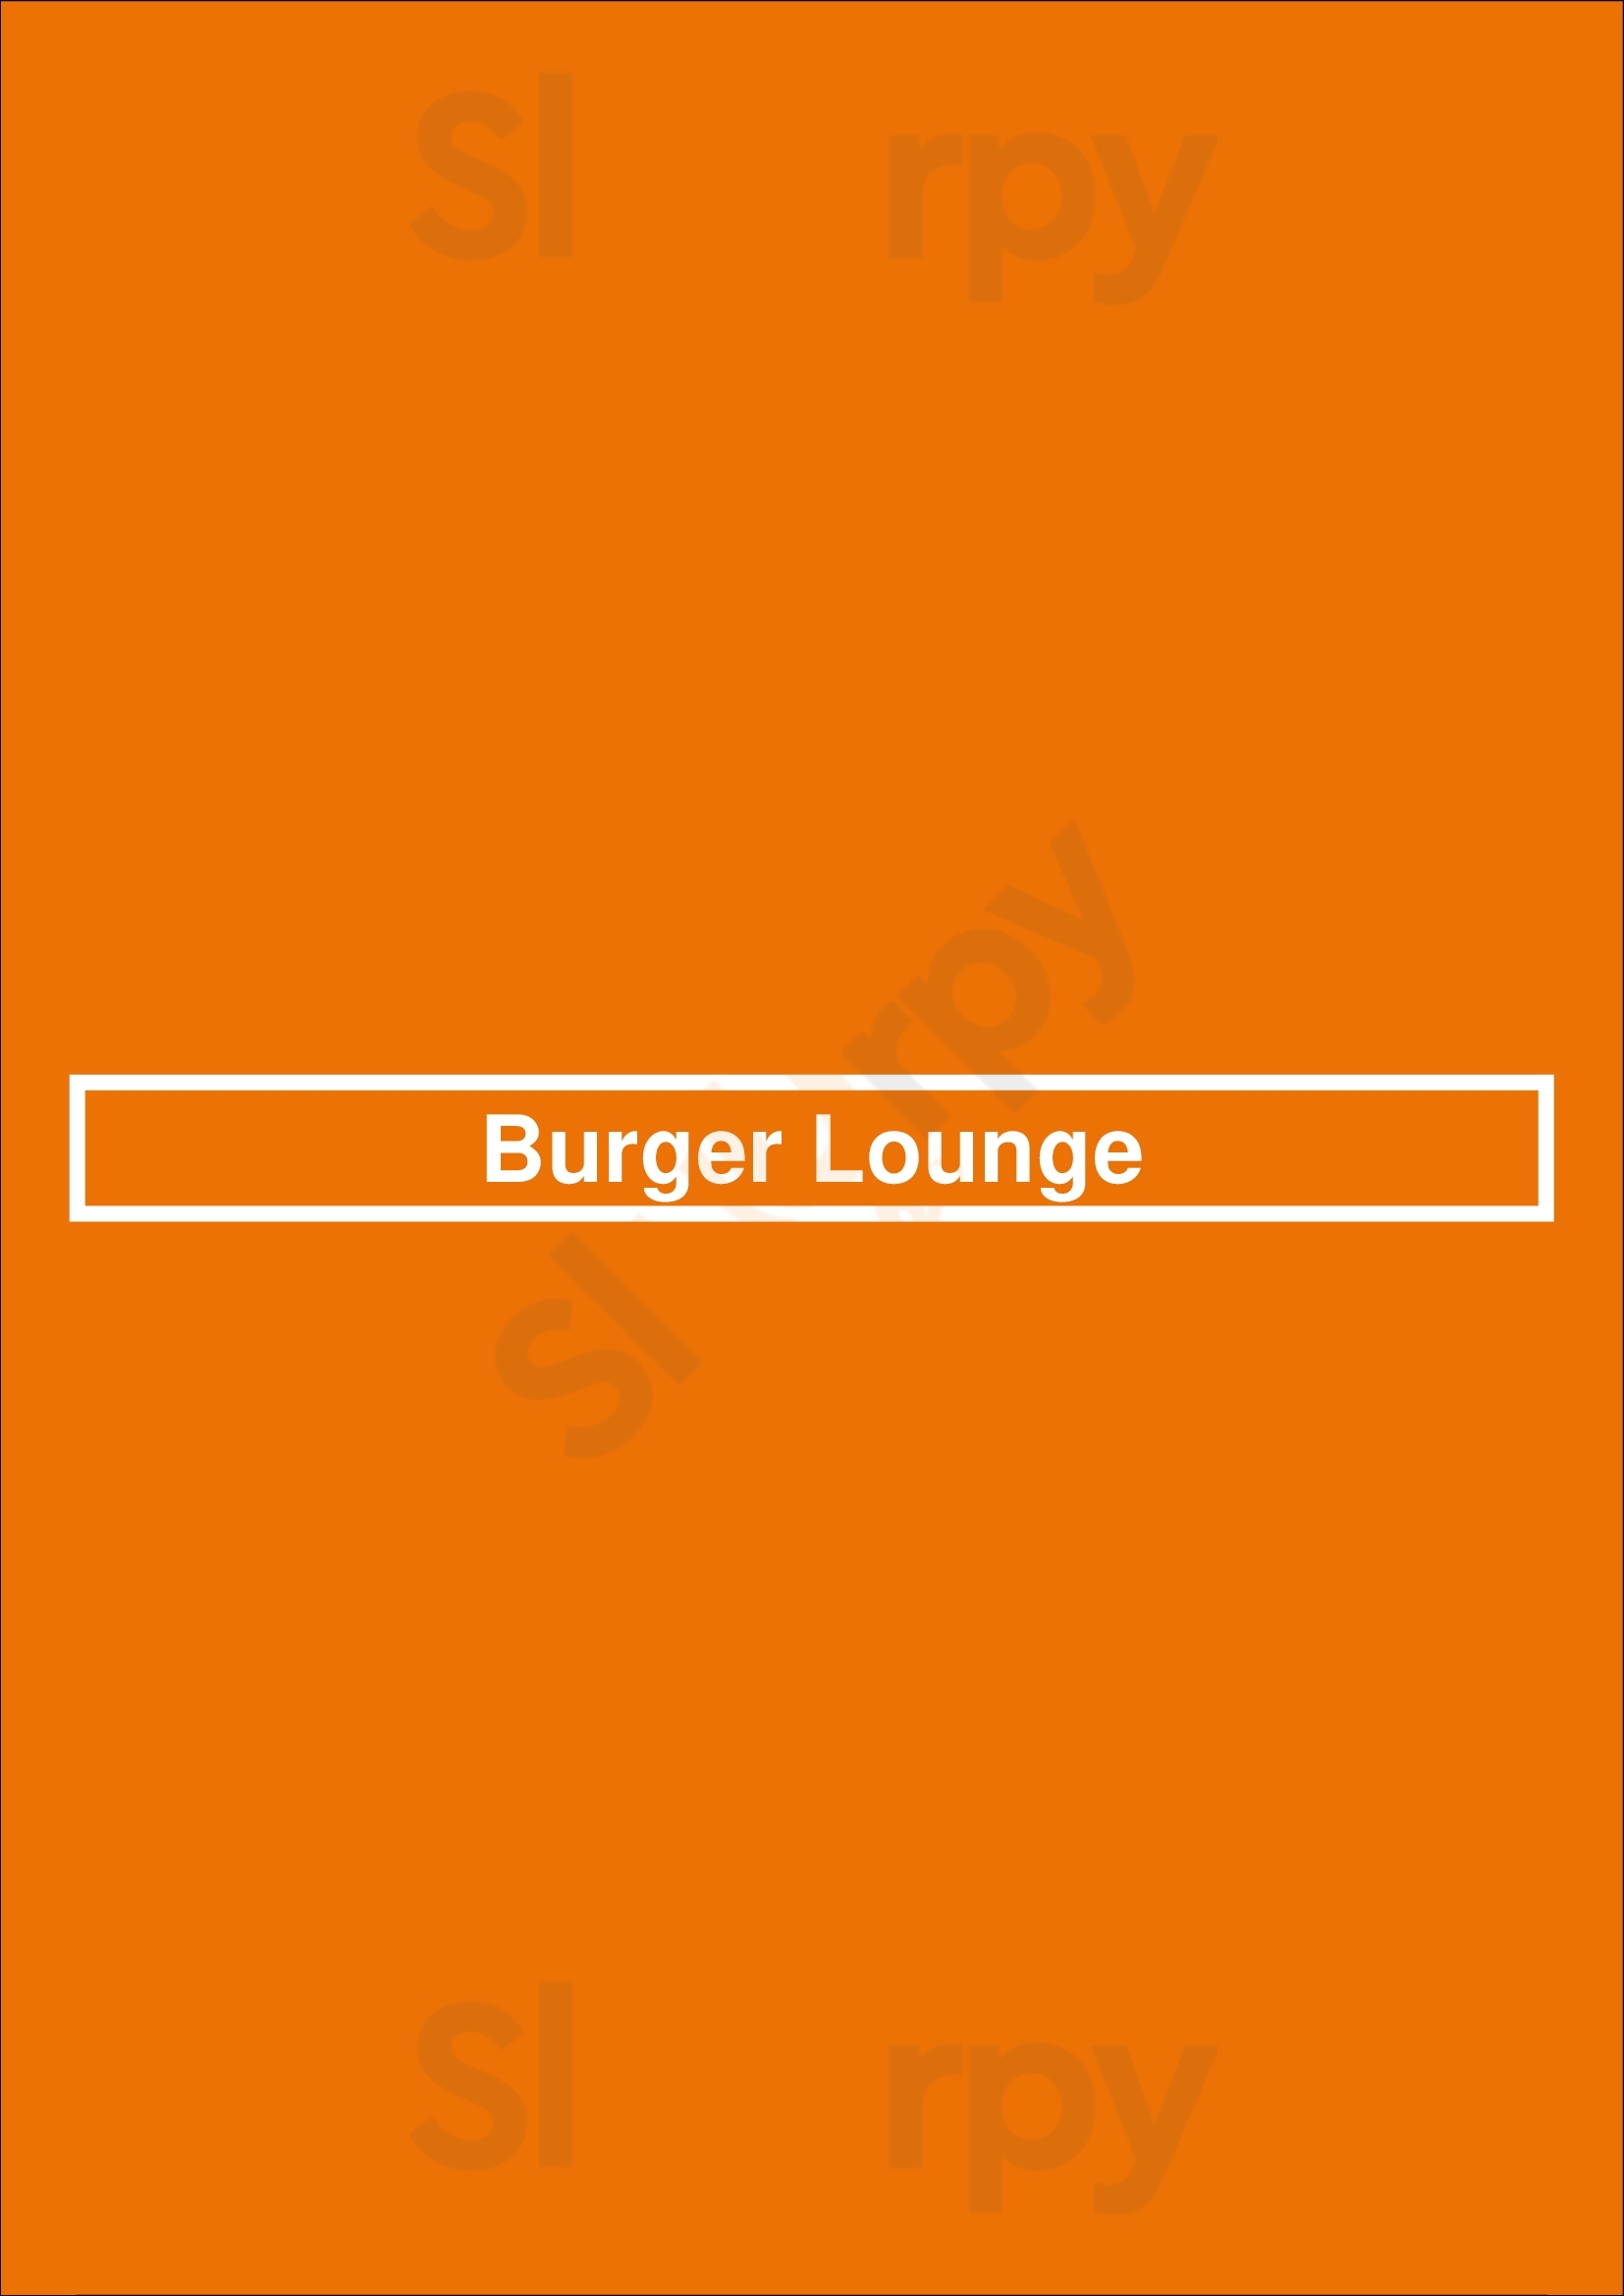 Burger Lounge San Diego Menu - 1